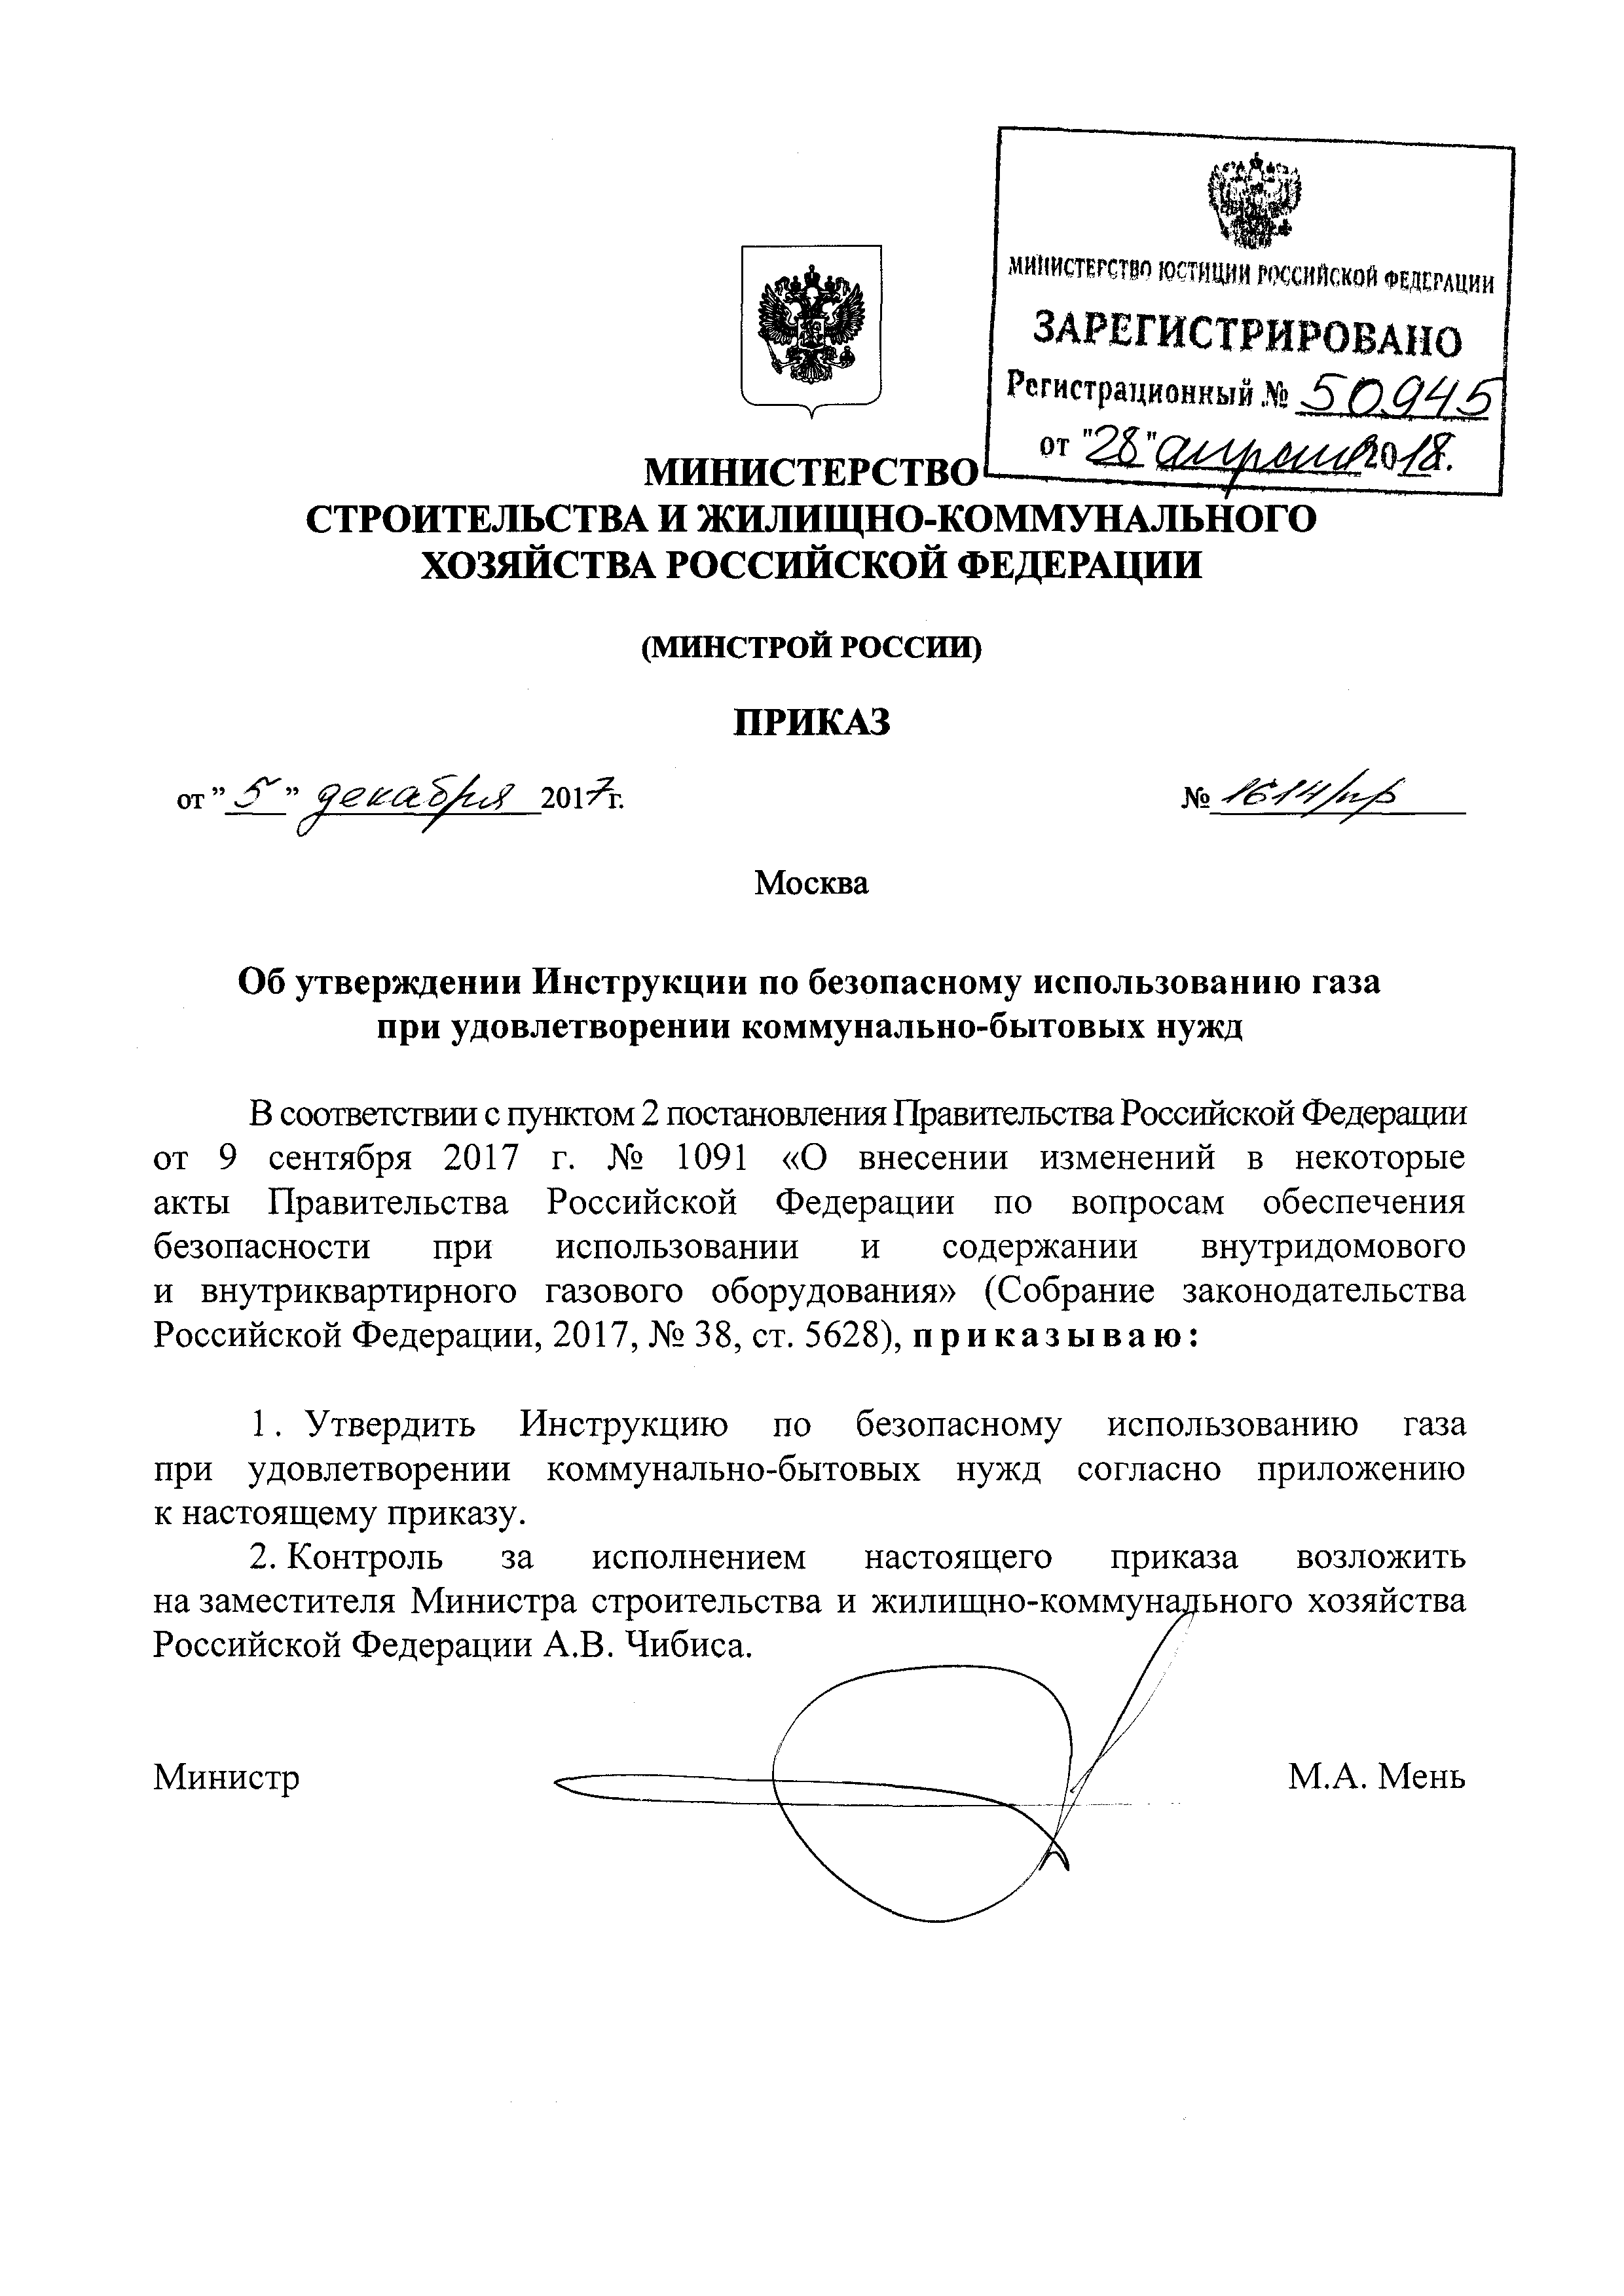 Приказ минстроя россии no 344 пр